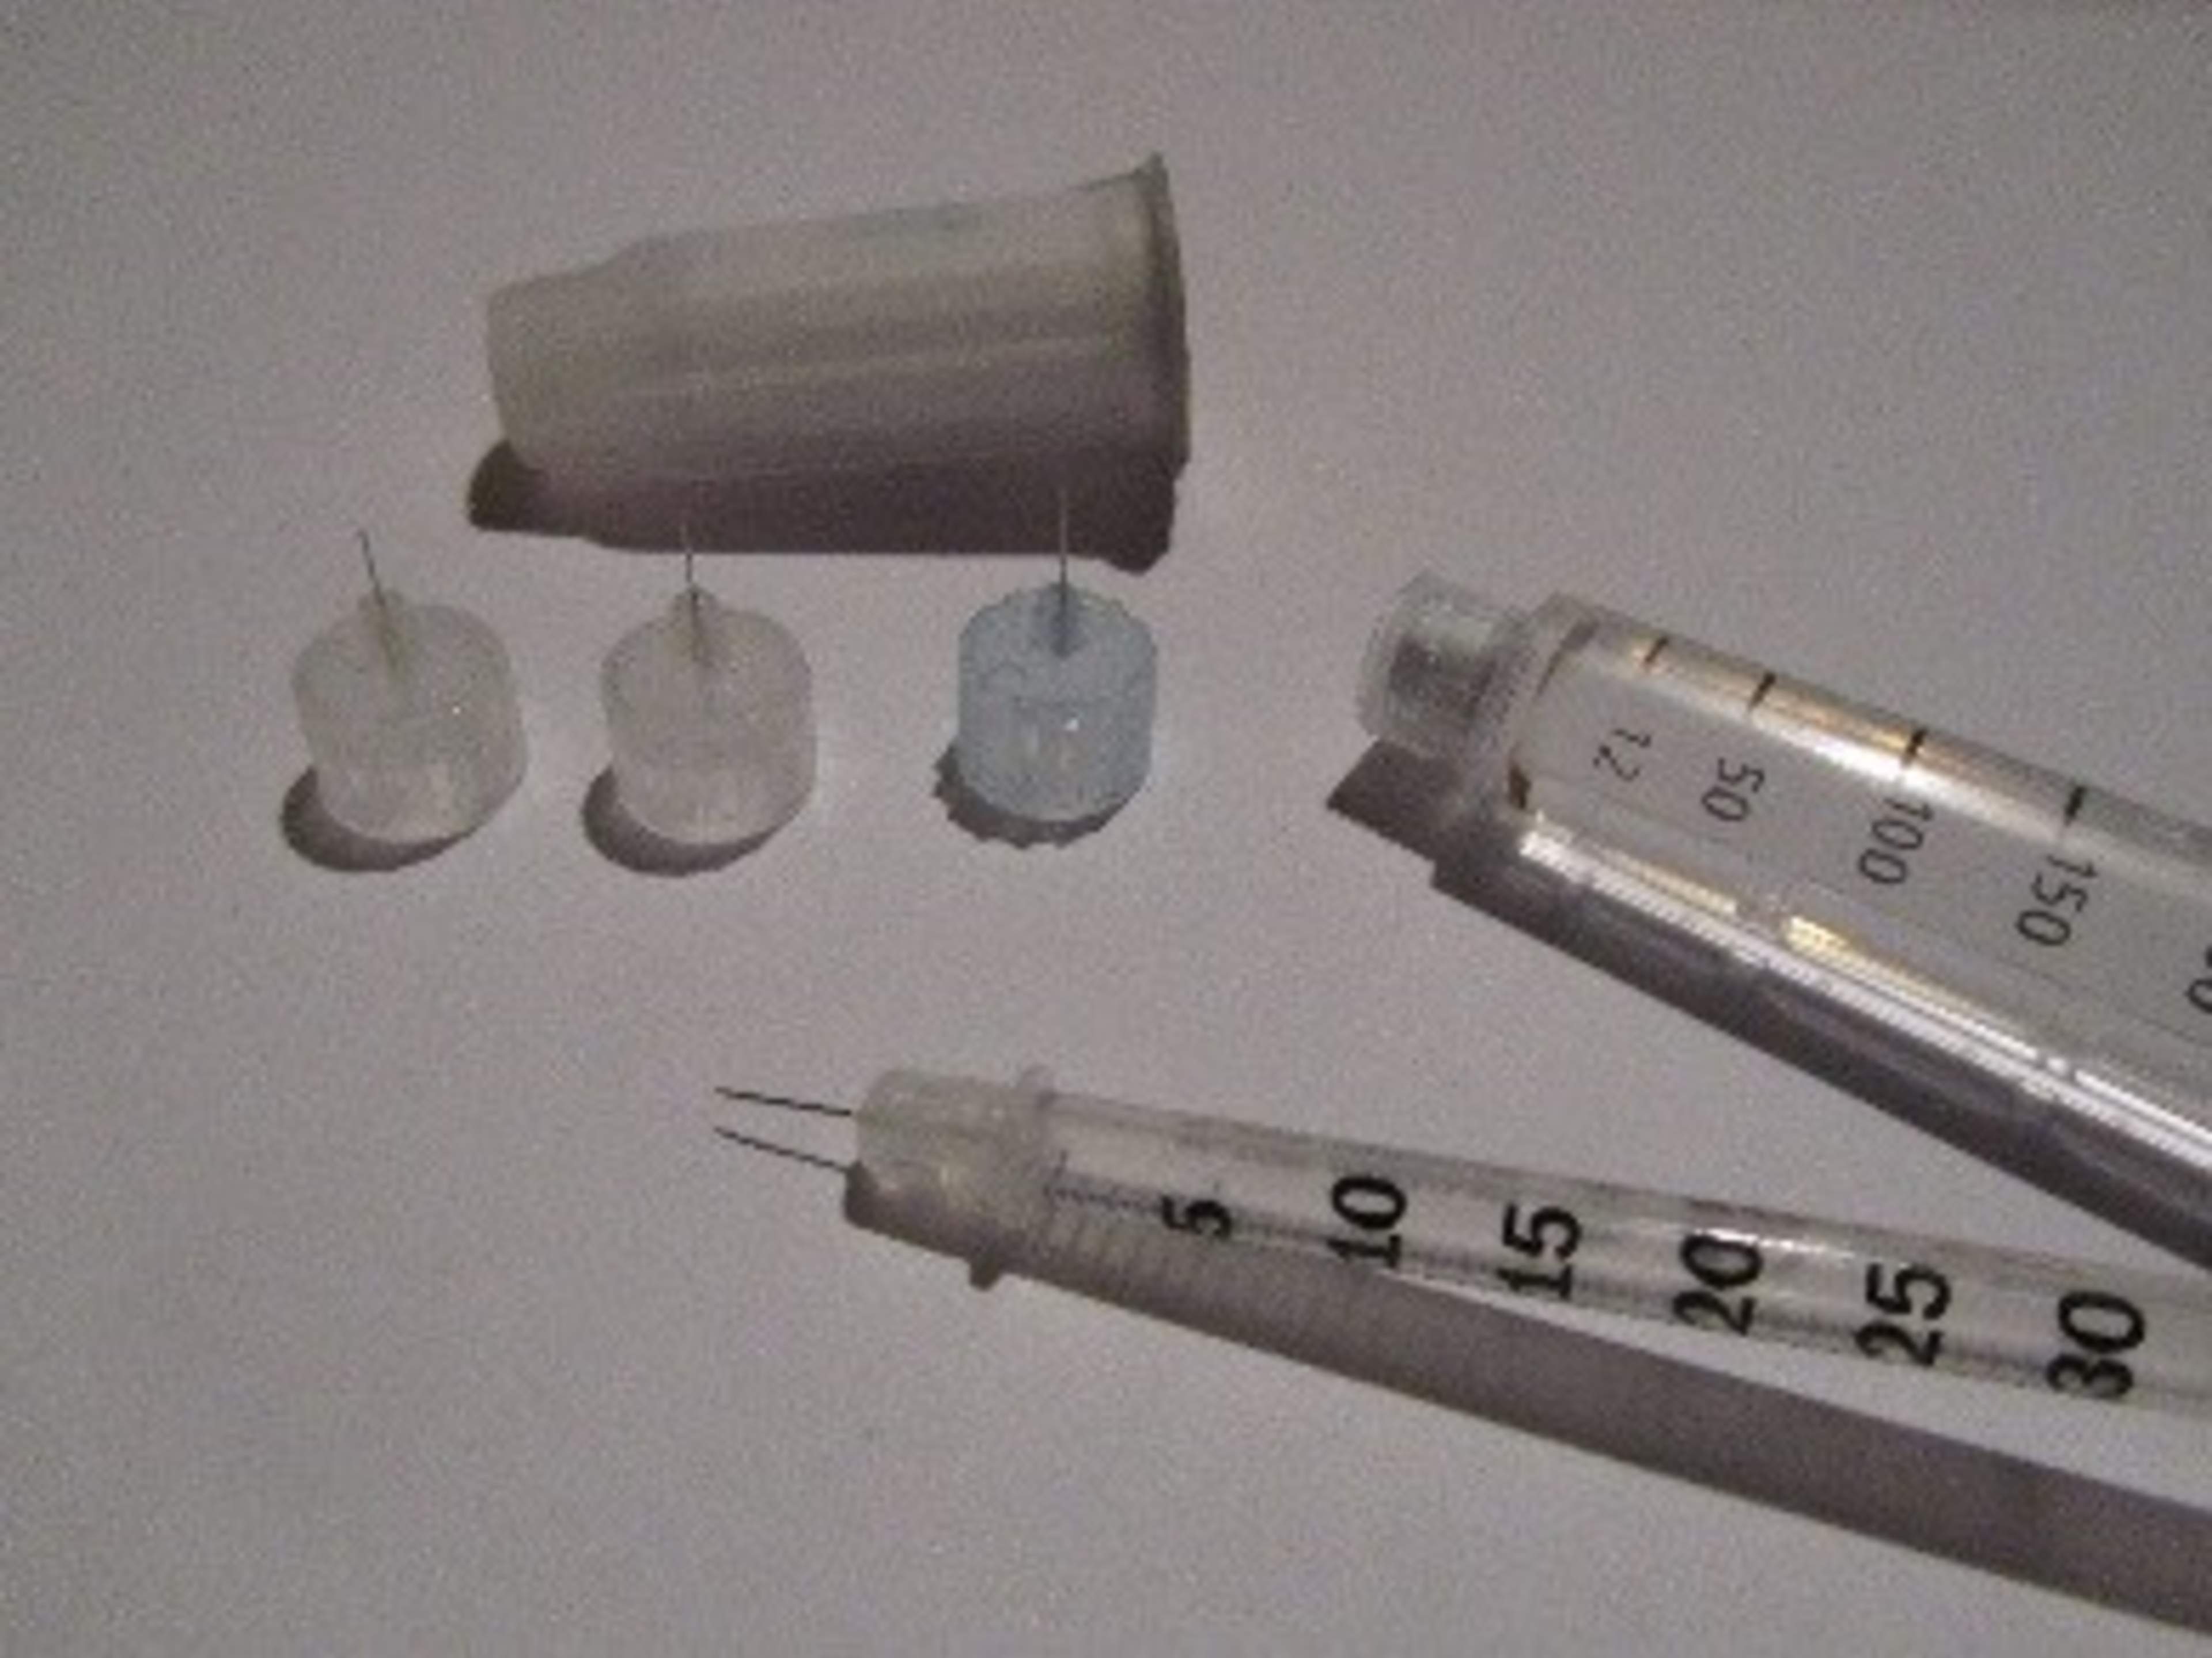 Bilden visar tre olika nålar för insulinpennan, en insulinspruta, en insulinpenna och ett säkerhetsverktyg för att avlägsna nålen.